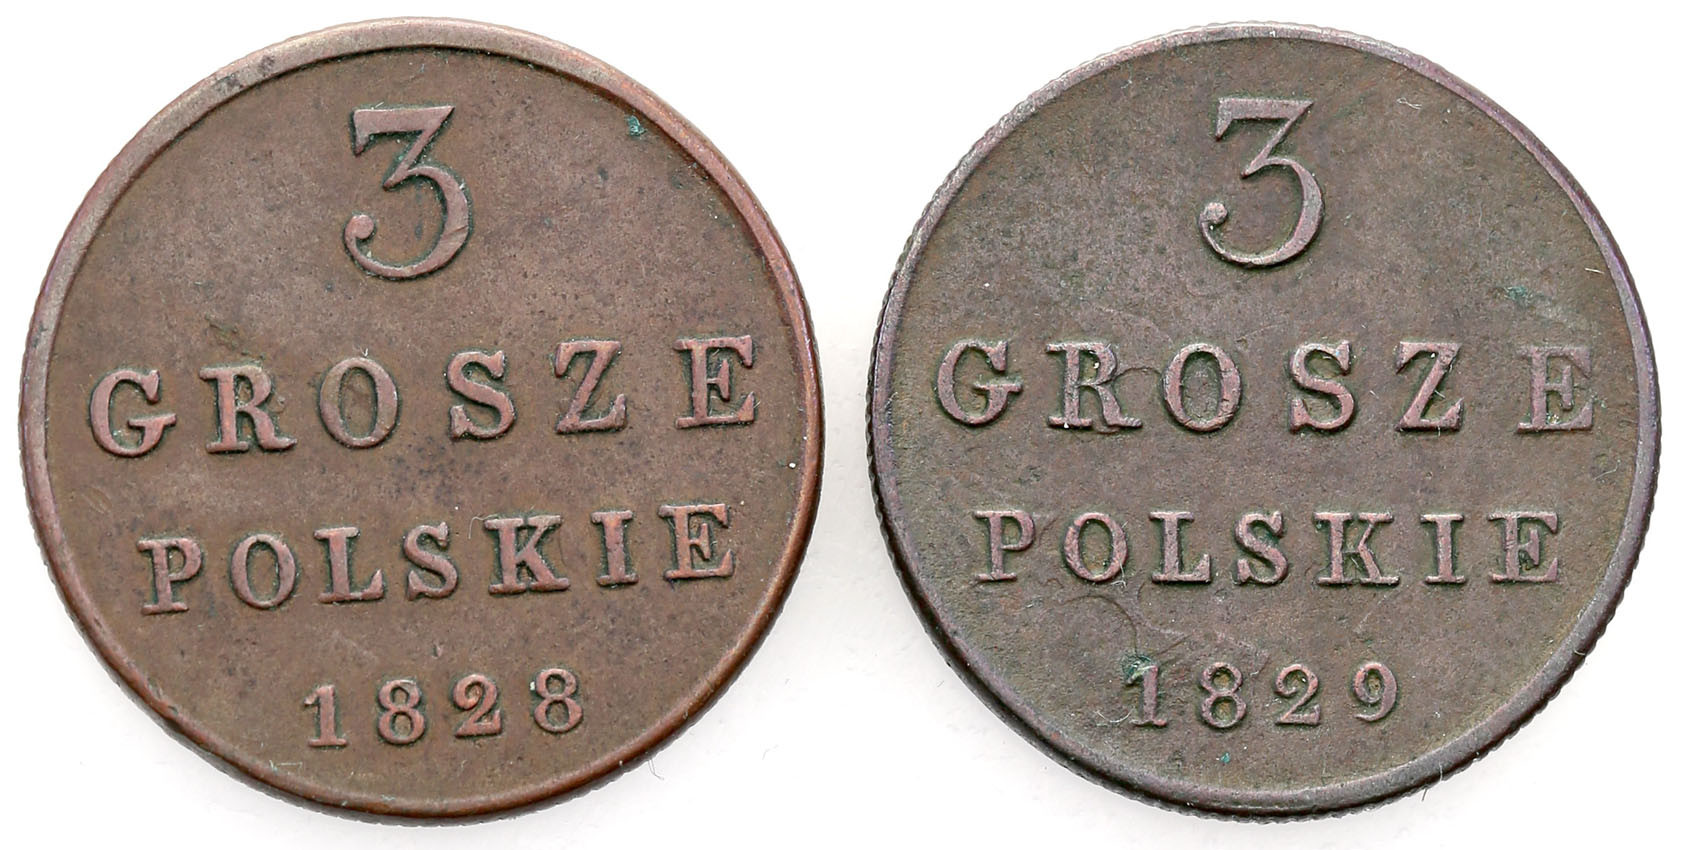 Polska XlX w. / Rosja. 3 Grosze Polskie (Trojak) 1828-1829, Warszawa – zestaw 2 szt.